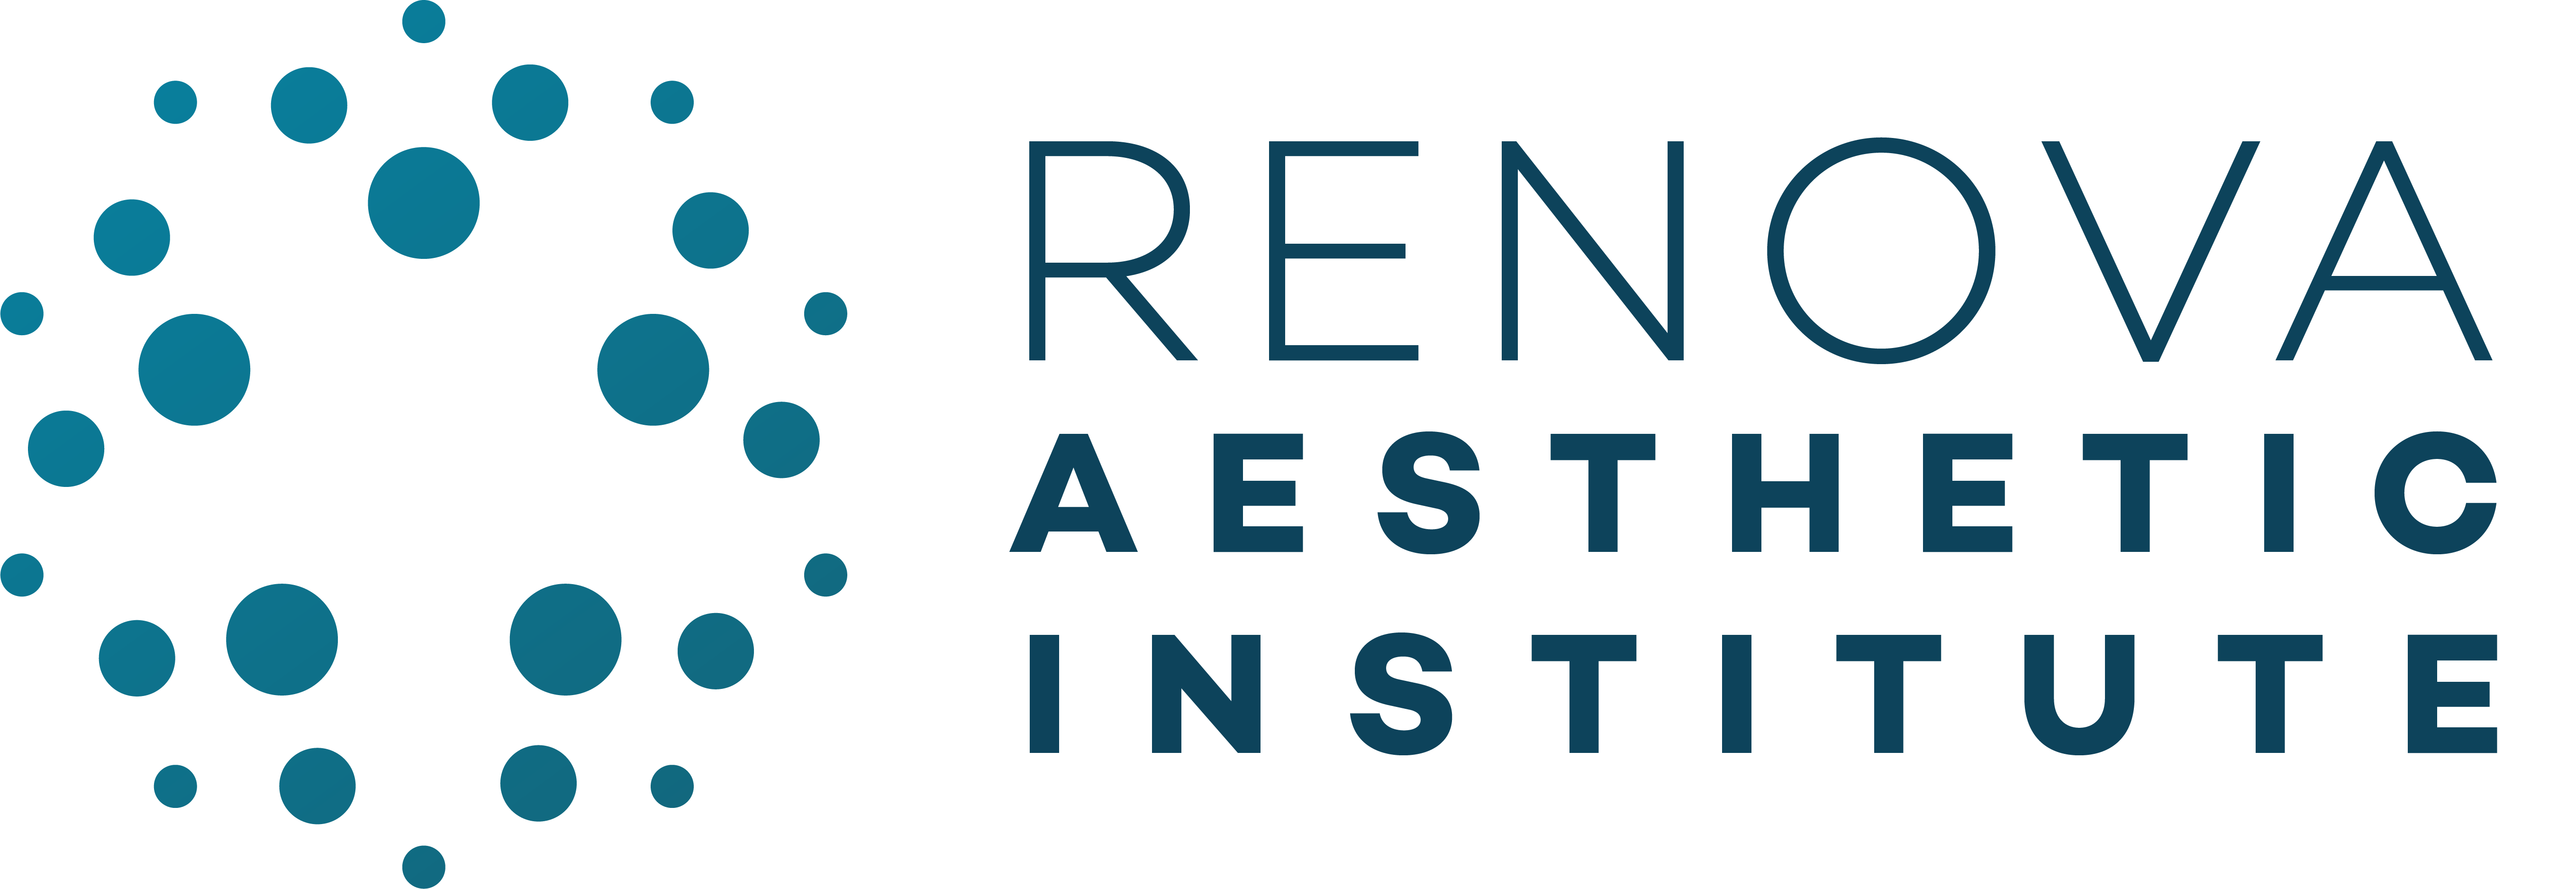 Renova Aesthetic Institute